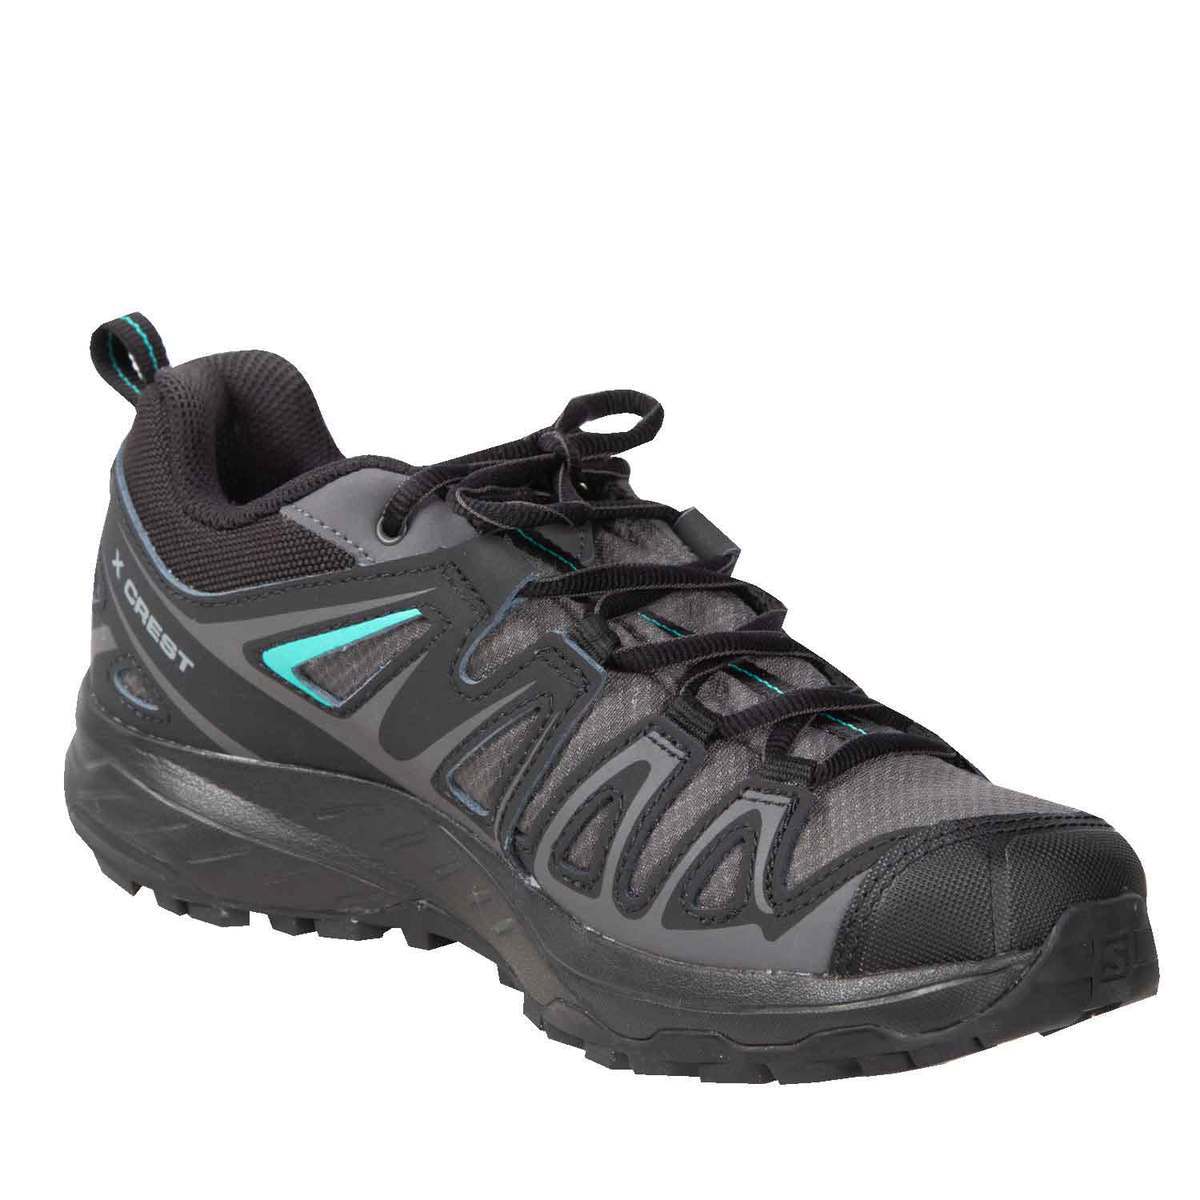 Salomon Women's X Crest Waterproof Low Hiking Shoes | Sportsman's